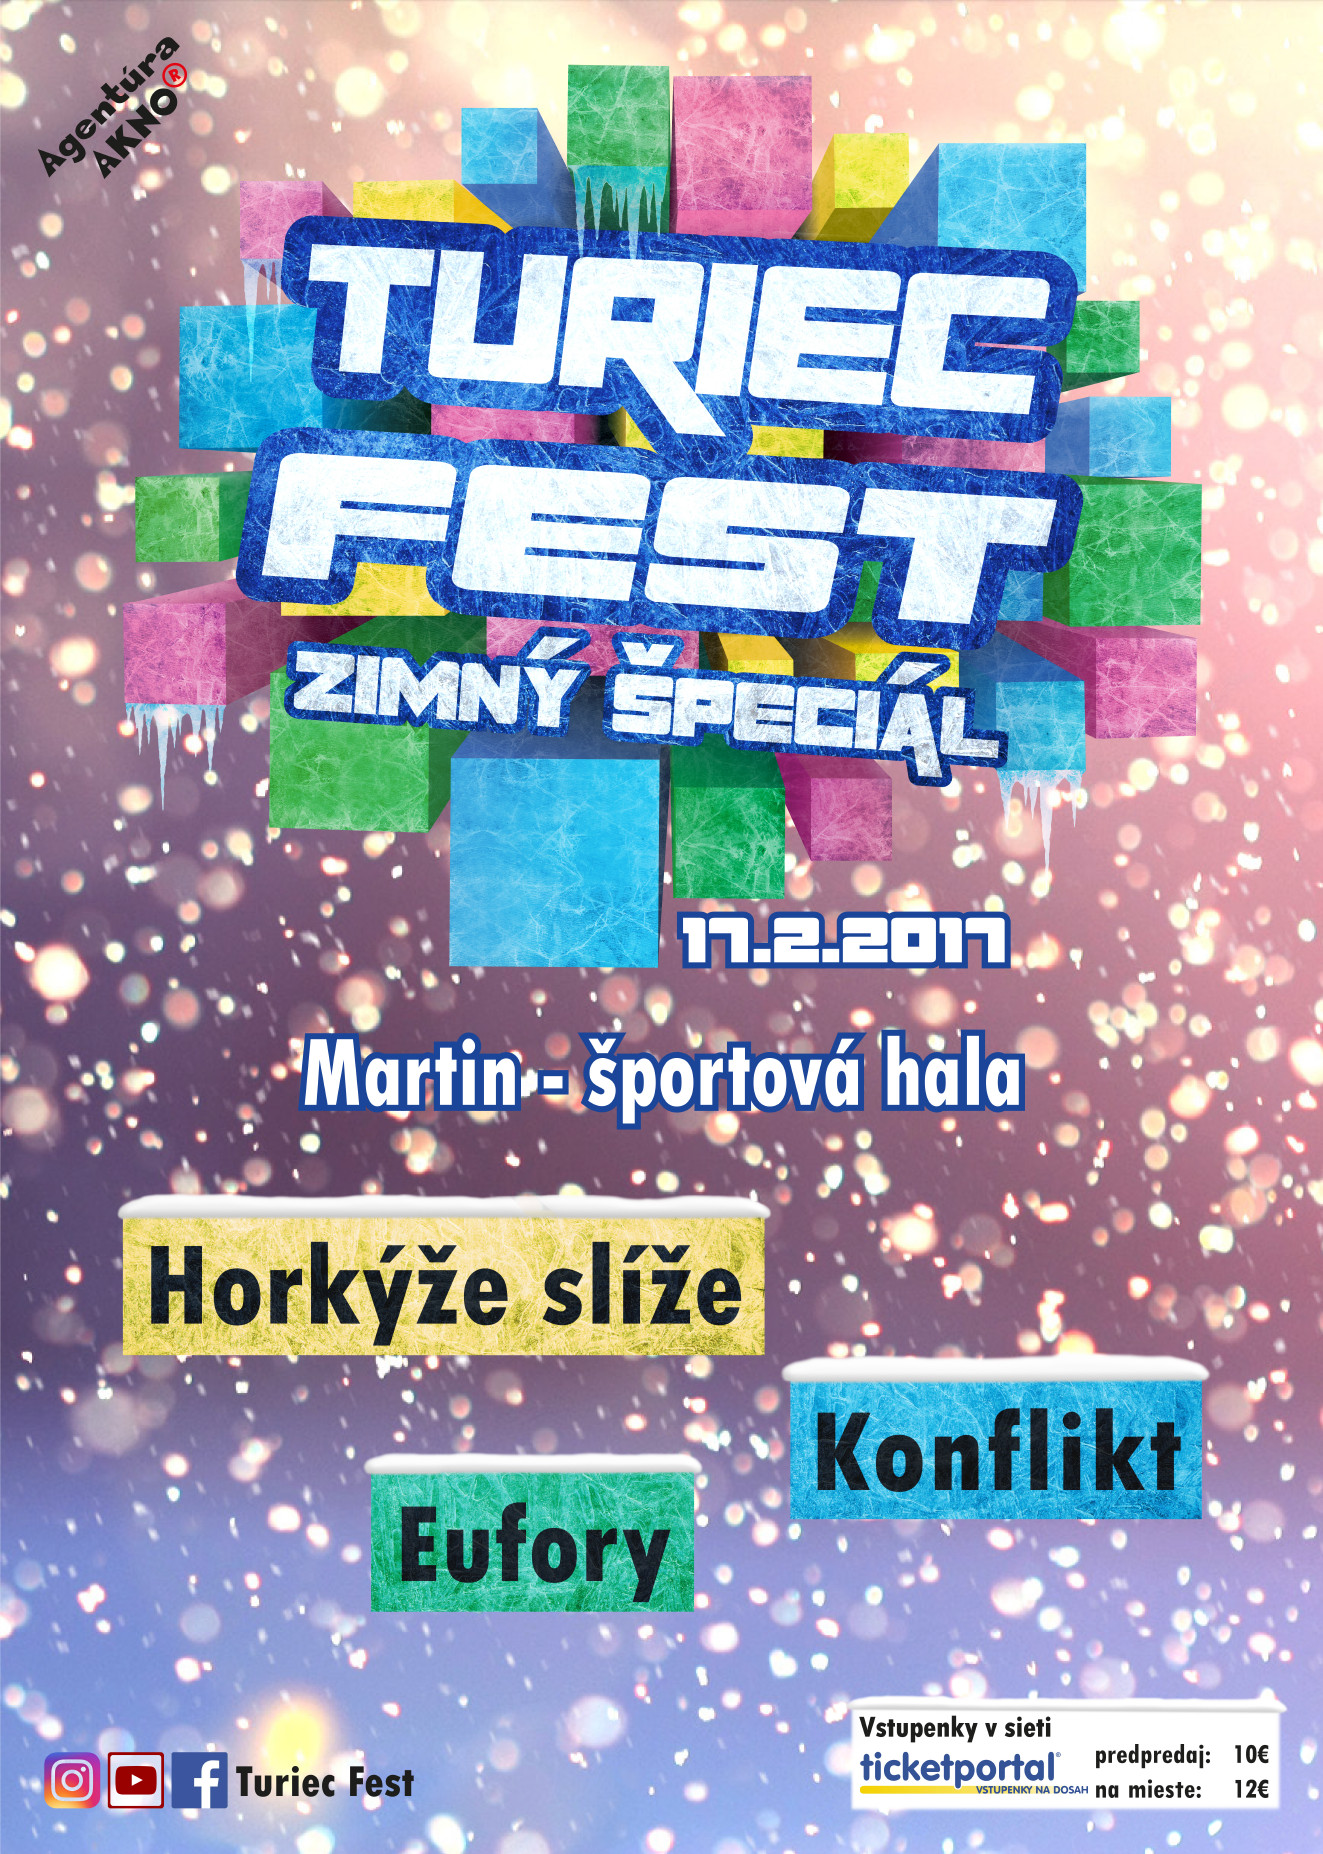 , Turiec Fest – zimný špeciál už tento piatok!